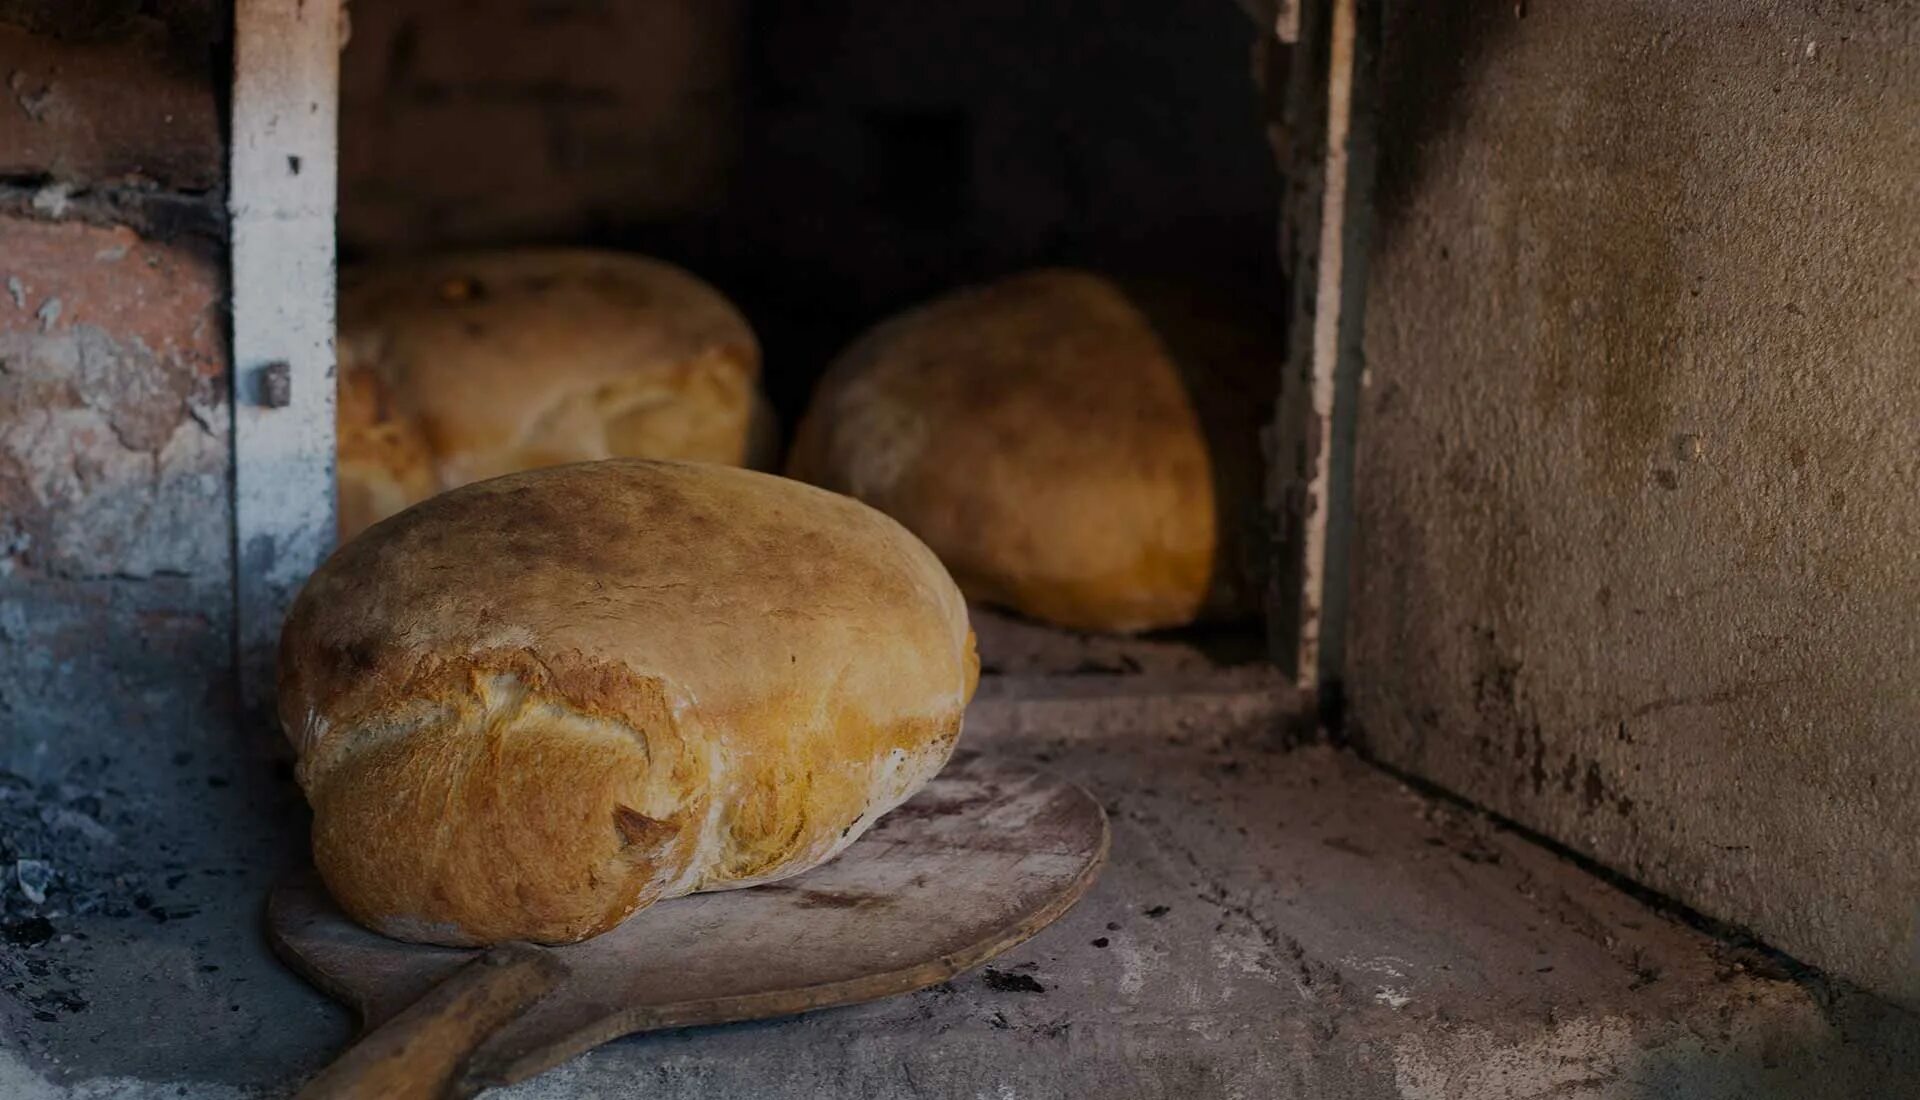 Видео печь хлеб. Хлеб в печи. Хлеб в русской печи. Хлеб из русской печи. Печка для хлеба.